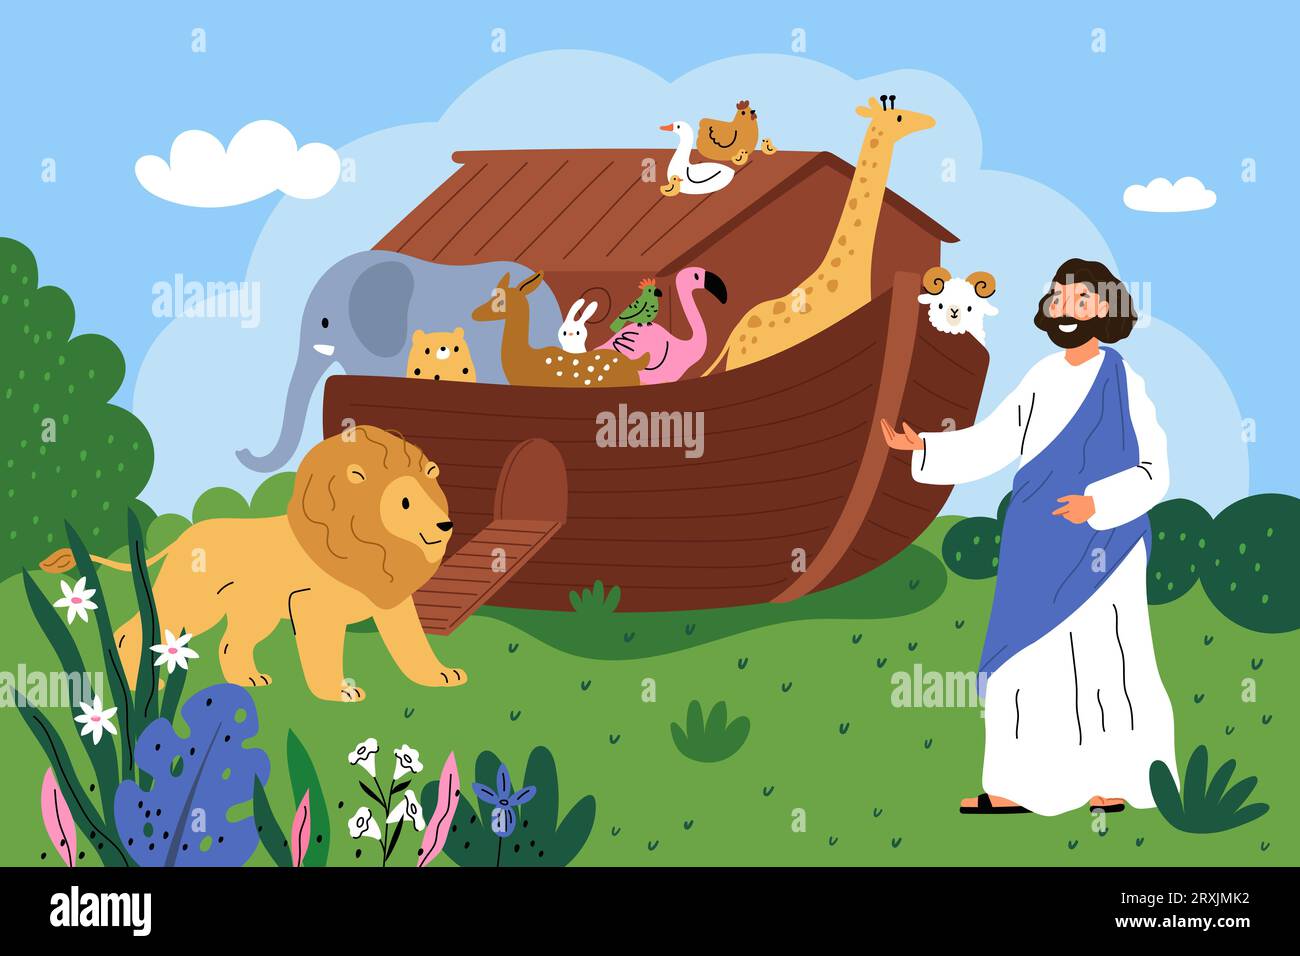 Scena biblica. Vecchio testamento. Arca Noah con animali selvatici. L'uomo barbuto in tunica raccoglie i personaggi della fauna sulla nave. Barca di legno. Religione cristiana Illustrazione Vettoriale